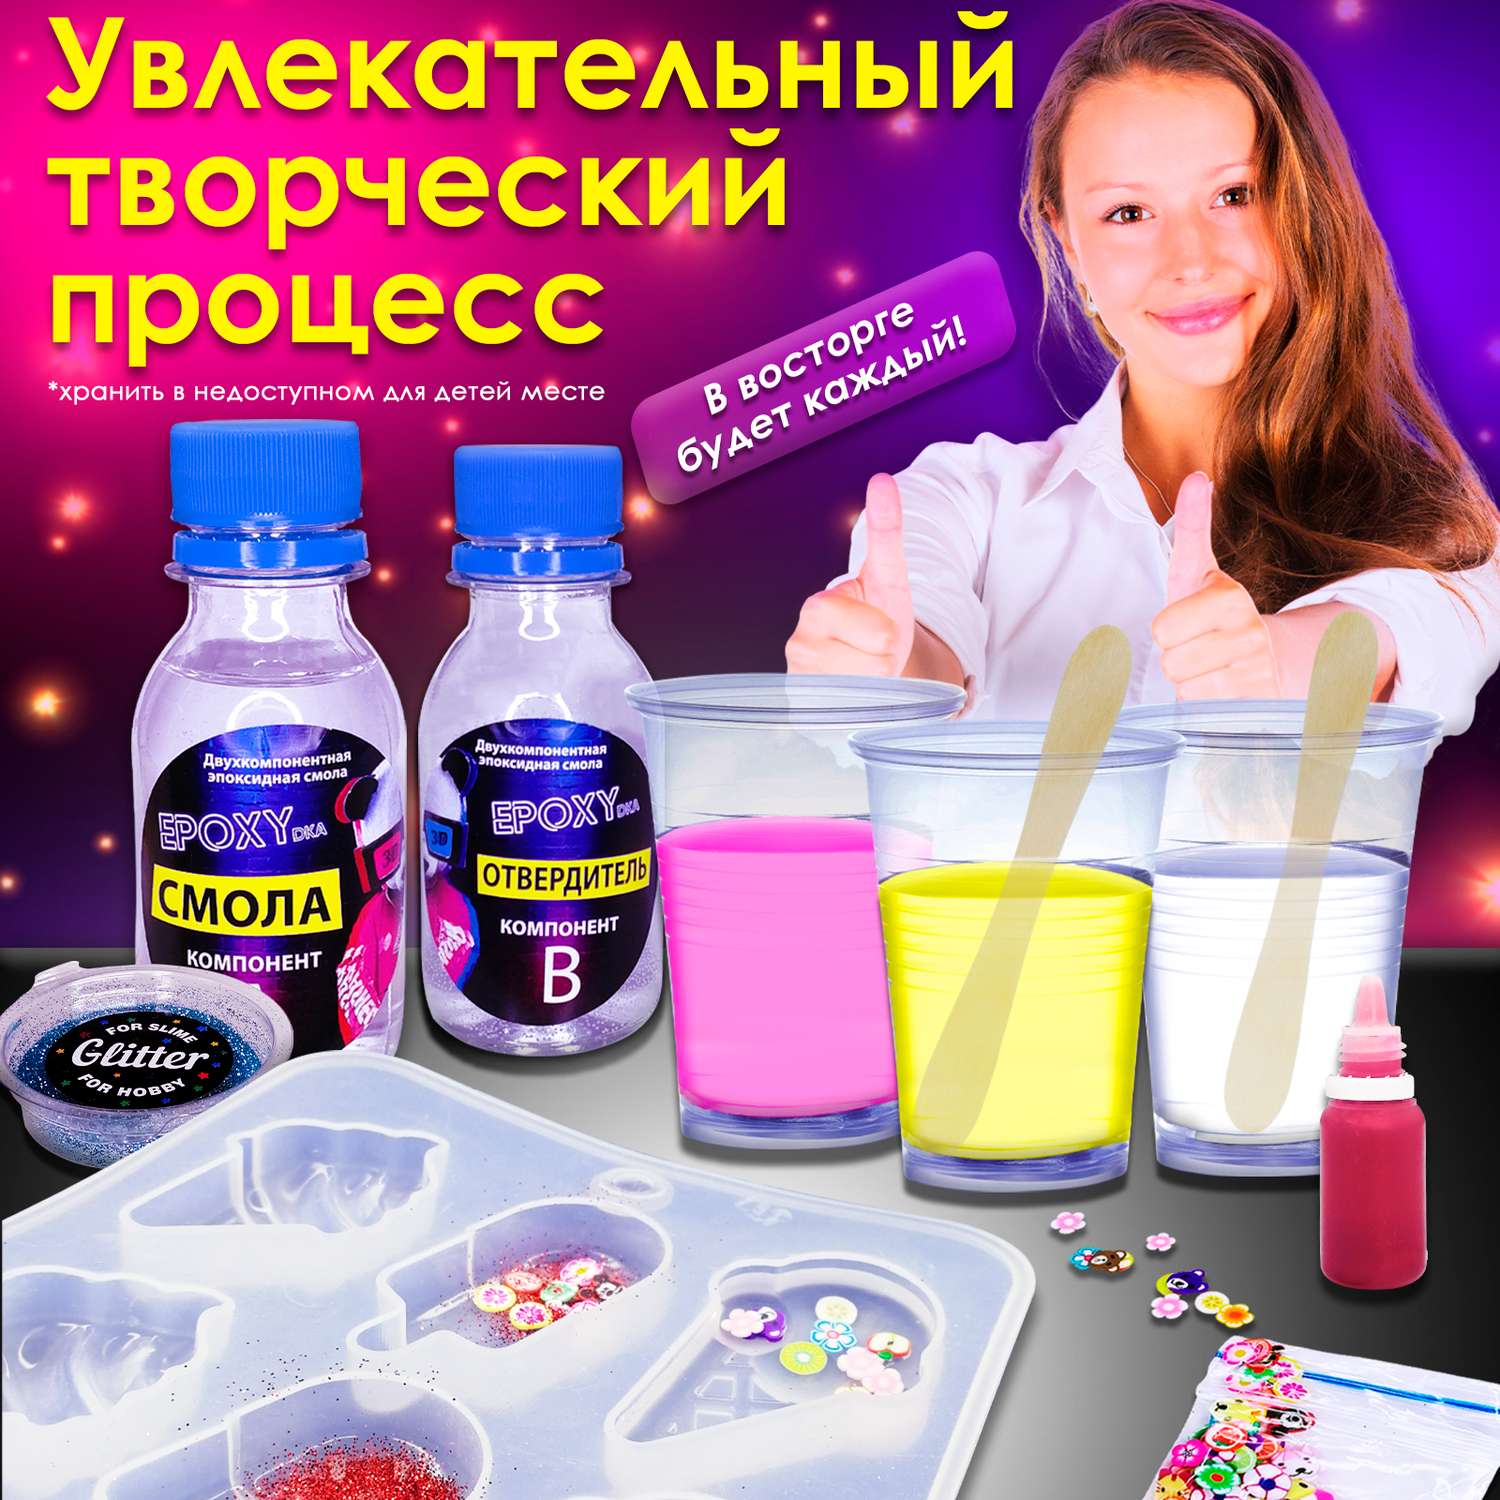 Набор для творчества MINI-TOYS Эпоксидная смола/EPOXYdka Normal BOX 3D/Молд силиконовый/Медведь - фото 5